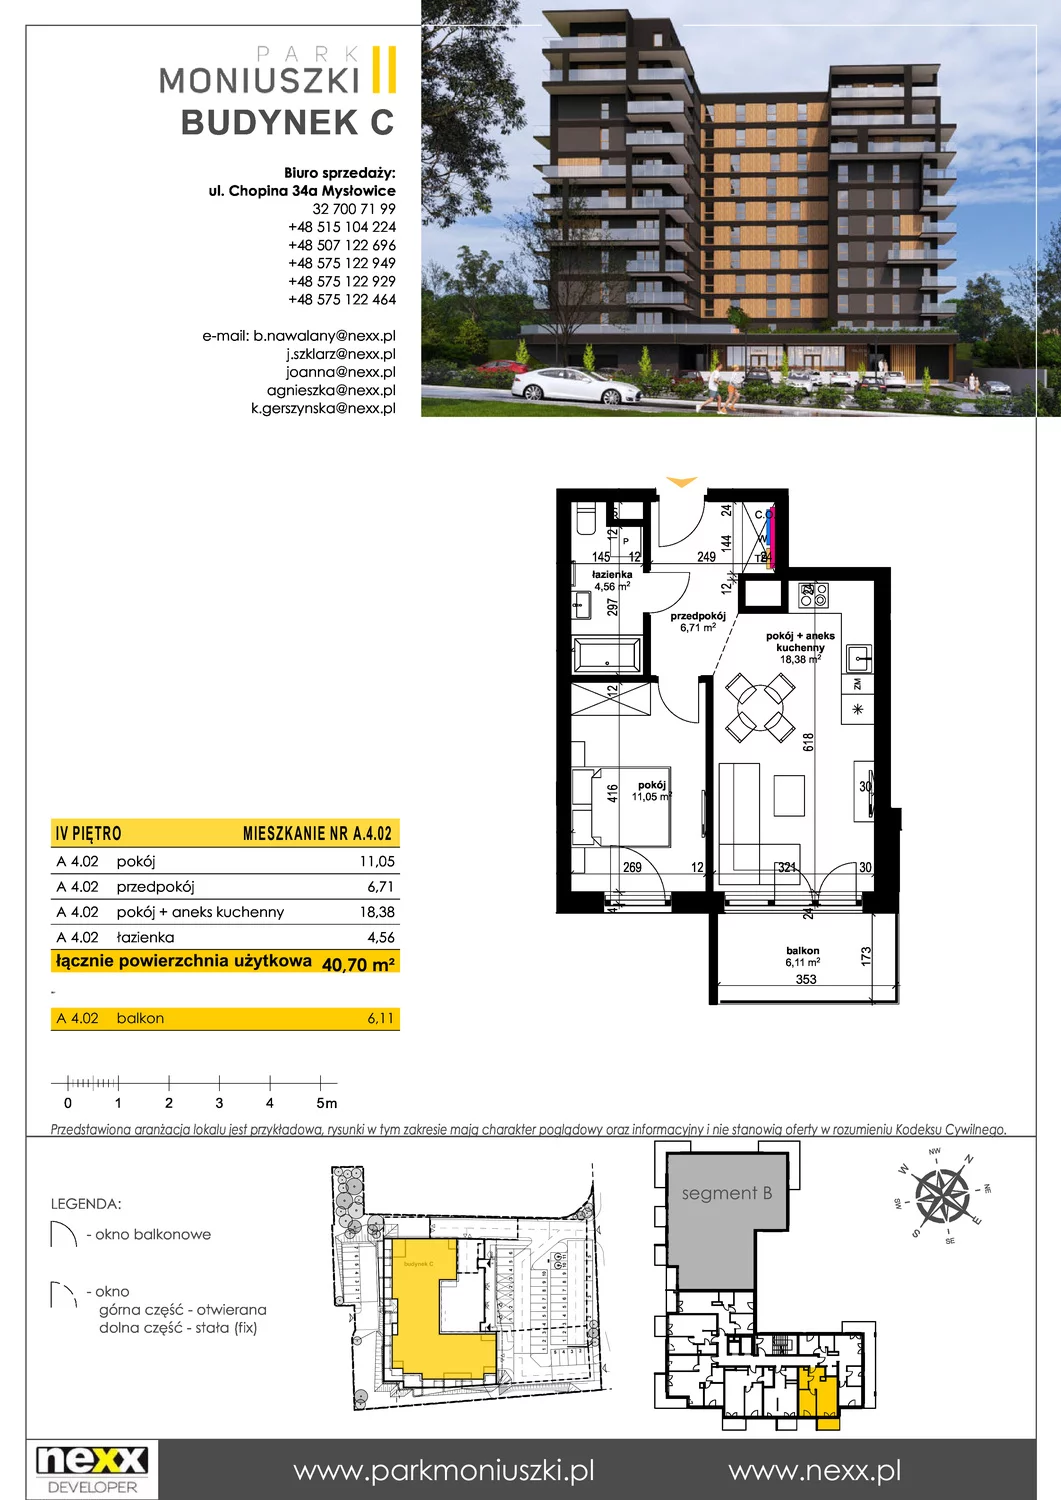 Mieszkanie 40,70 m², piętro 4, oferta nr C - A 4.02, Osiedle Park Moniuszki, Mysłowice, ul. Okrzei / Wielka Skotnica